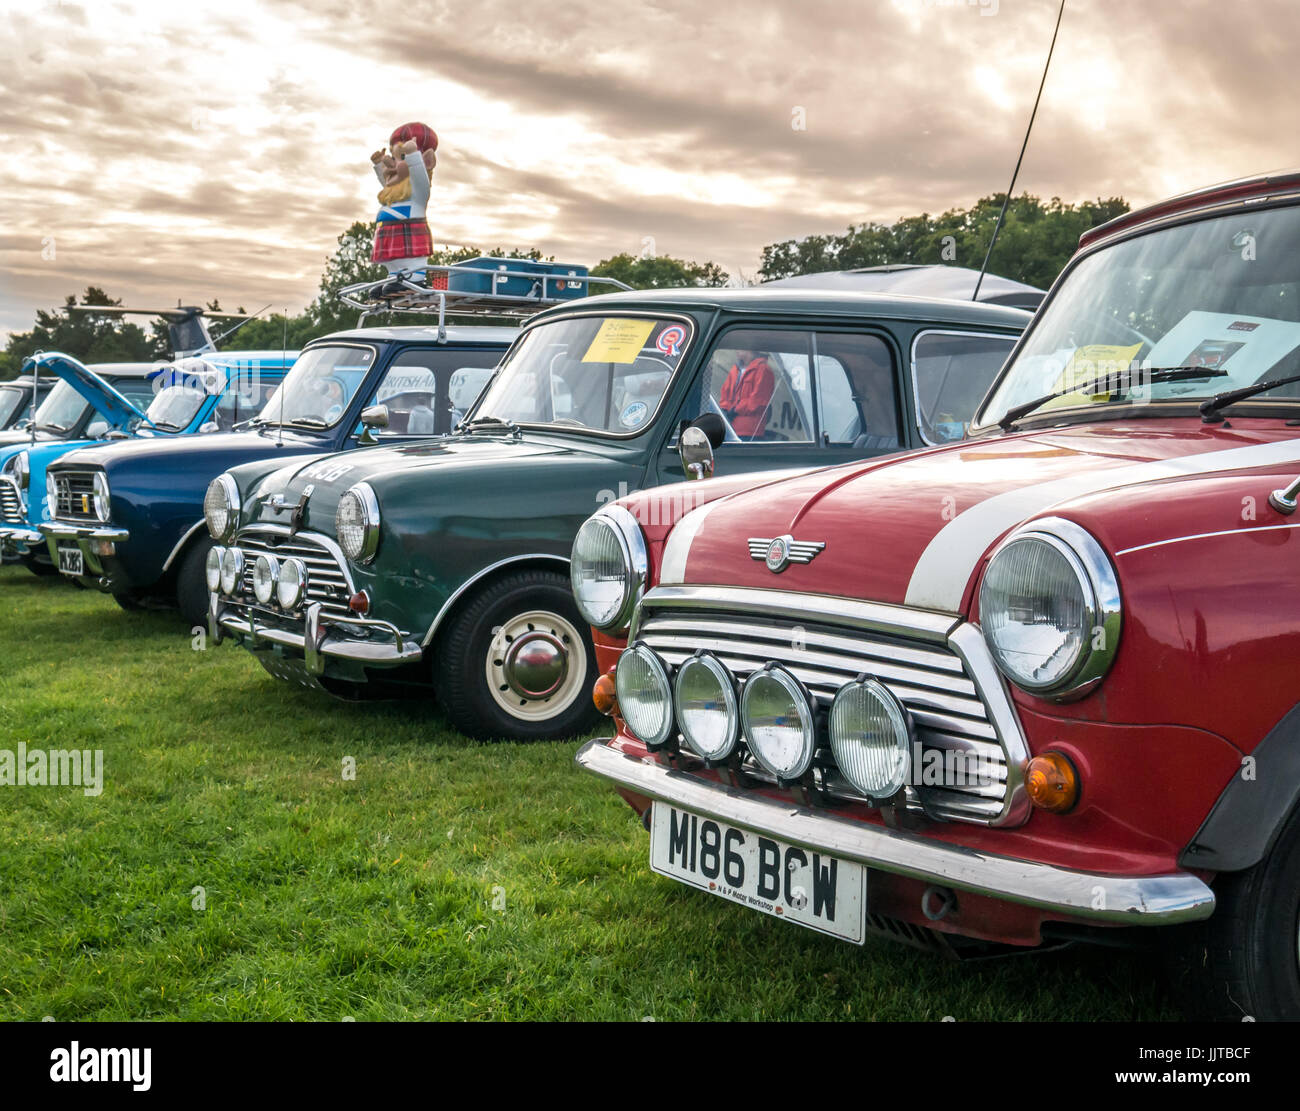 Reihe von bunten classic Mini Autos am Rad und Kotflügel Familie Veranstaltung 2016, East Fortune, East Lothian, Schottland, Großbritannien Stockfoto